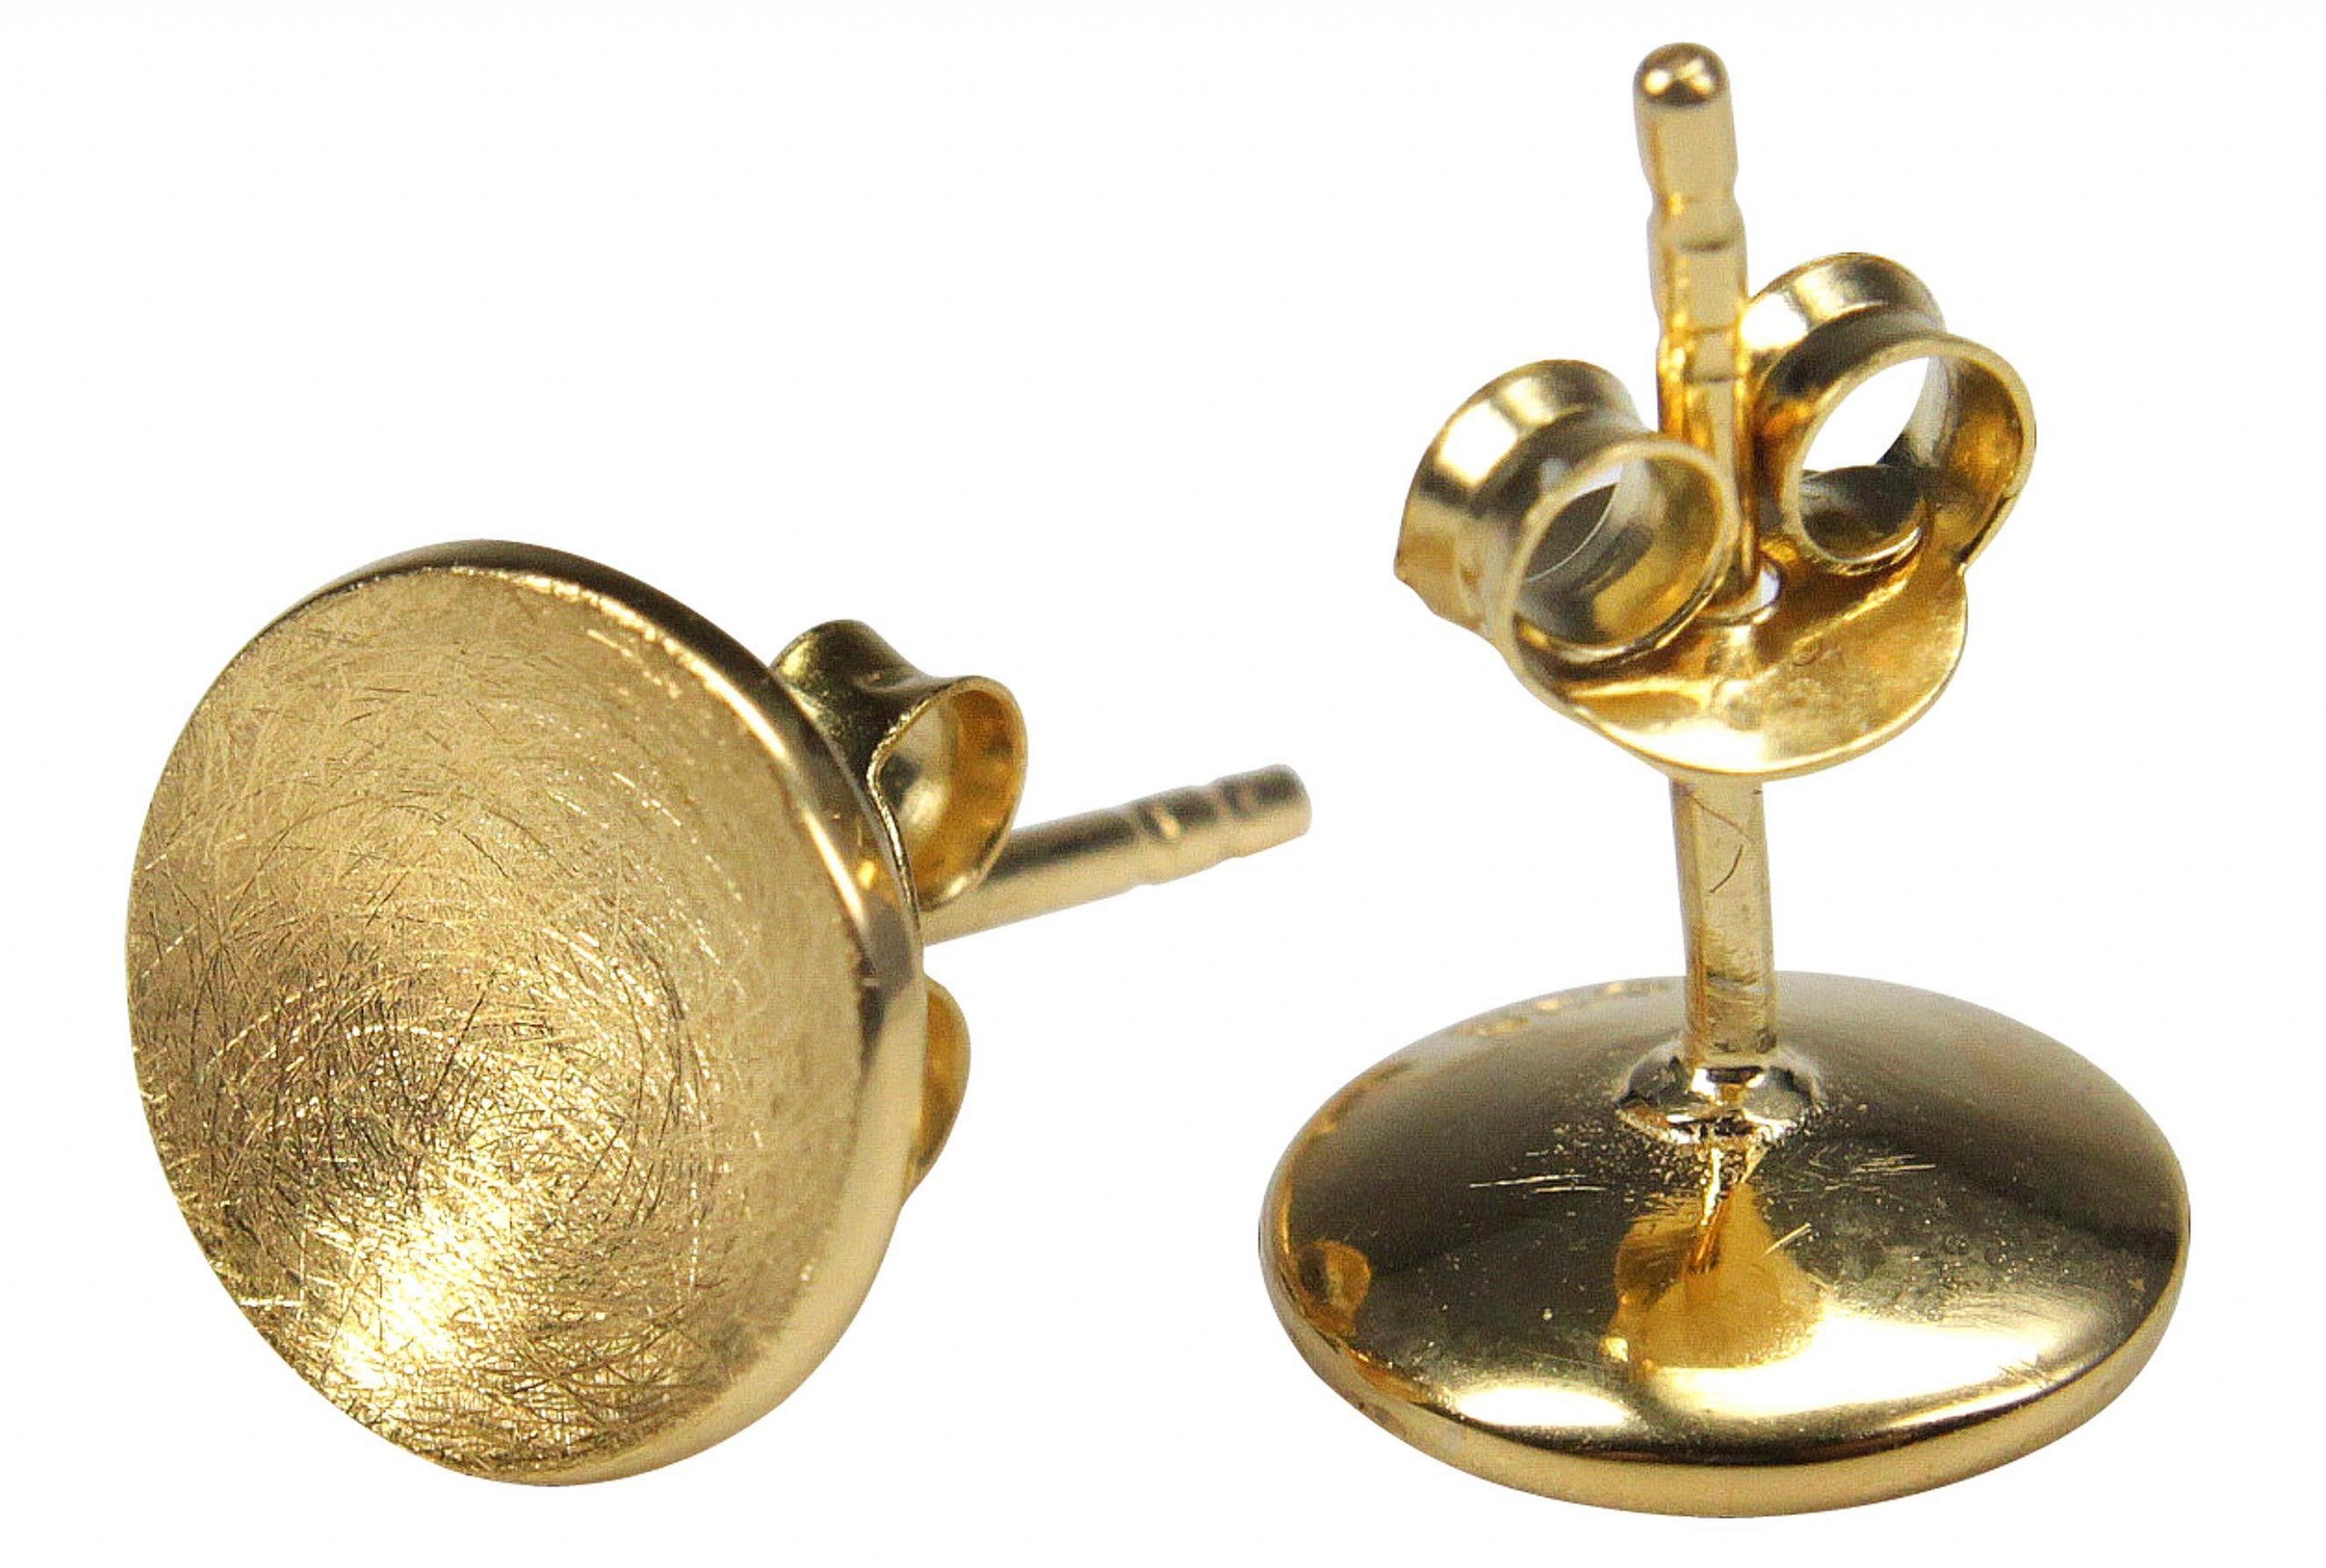 Ohrstecker für Damen in Form eines konkaven Kreises. Die Ohrringe bestehen aus Silber und die Oberfläche ist vergoldet.